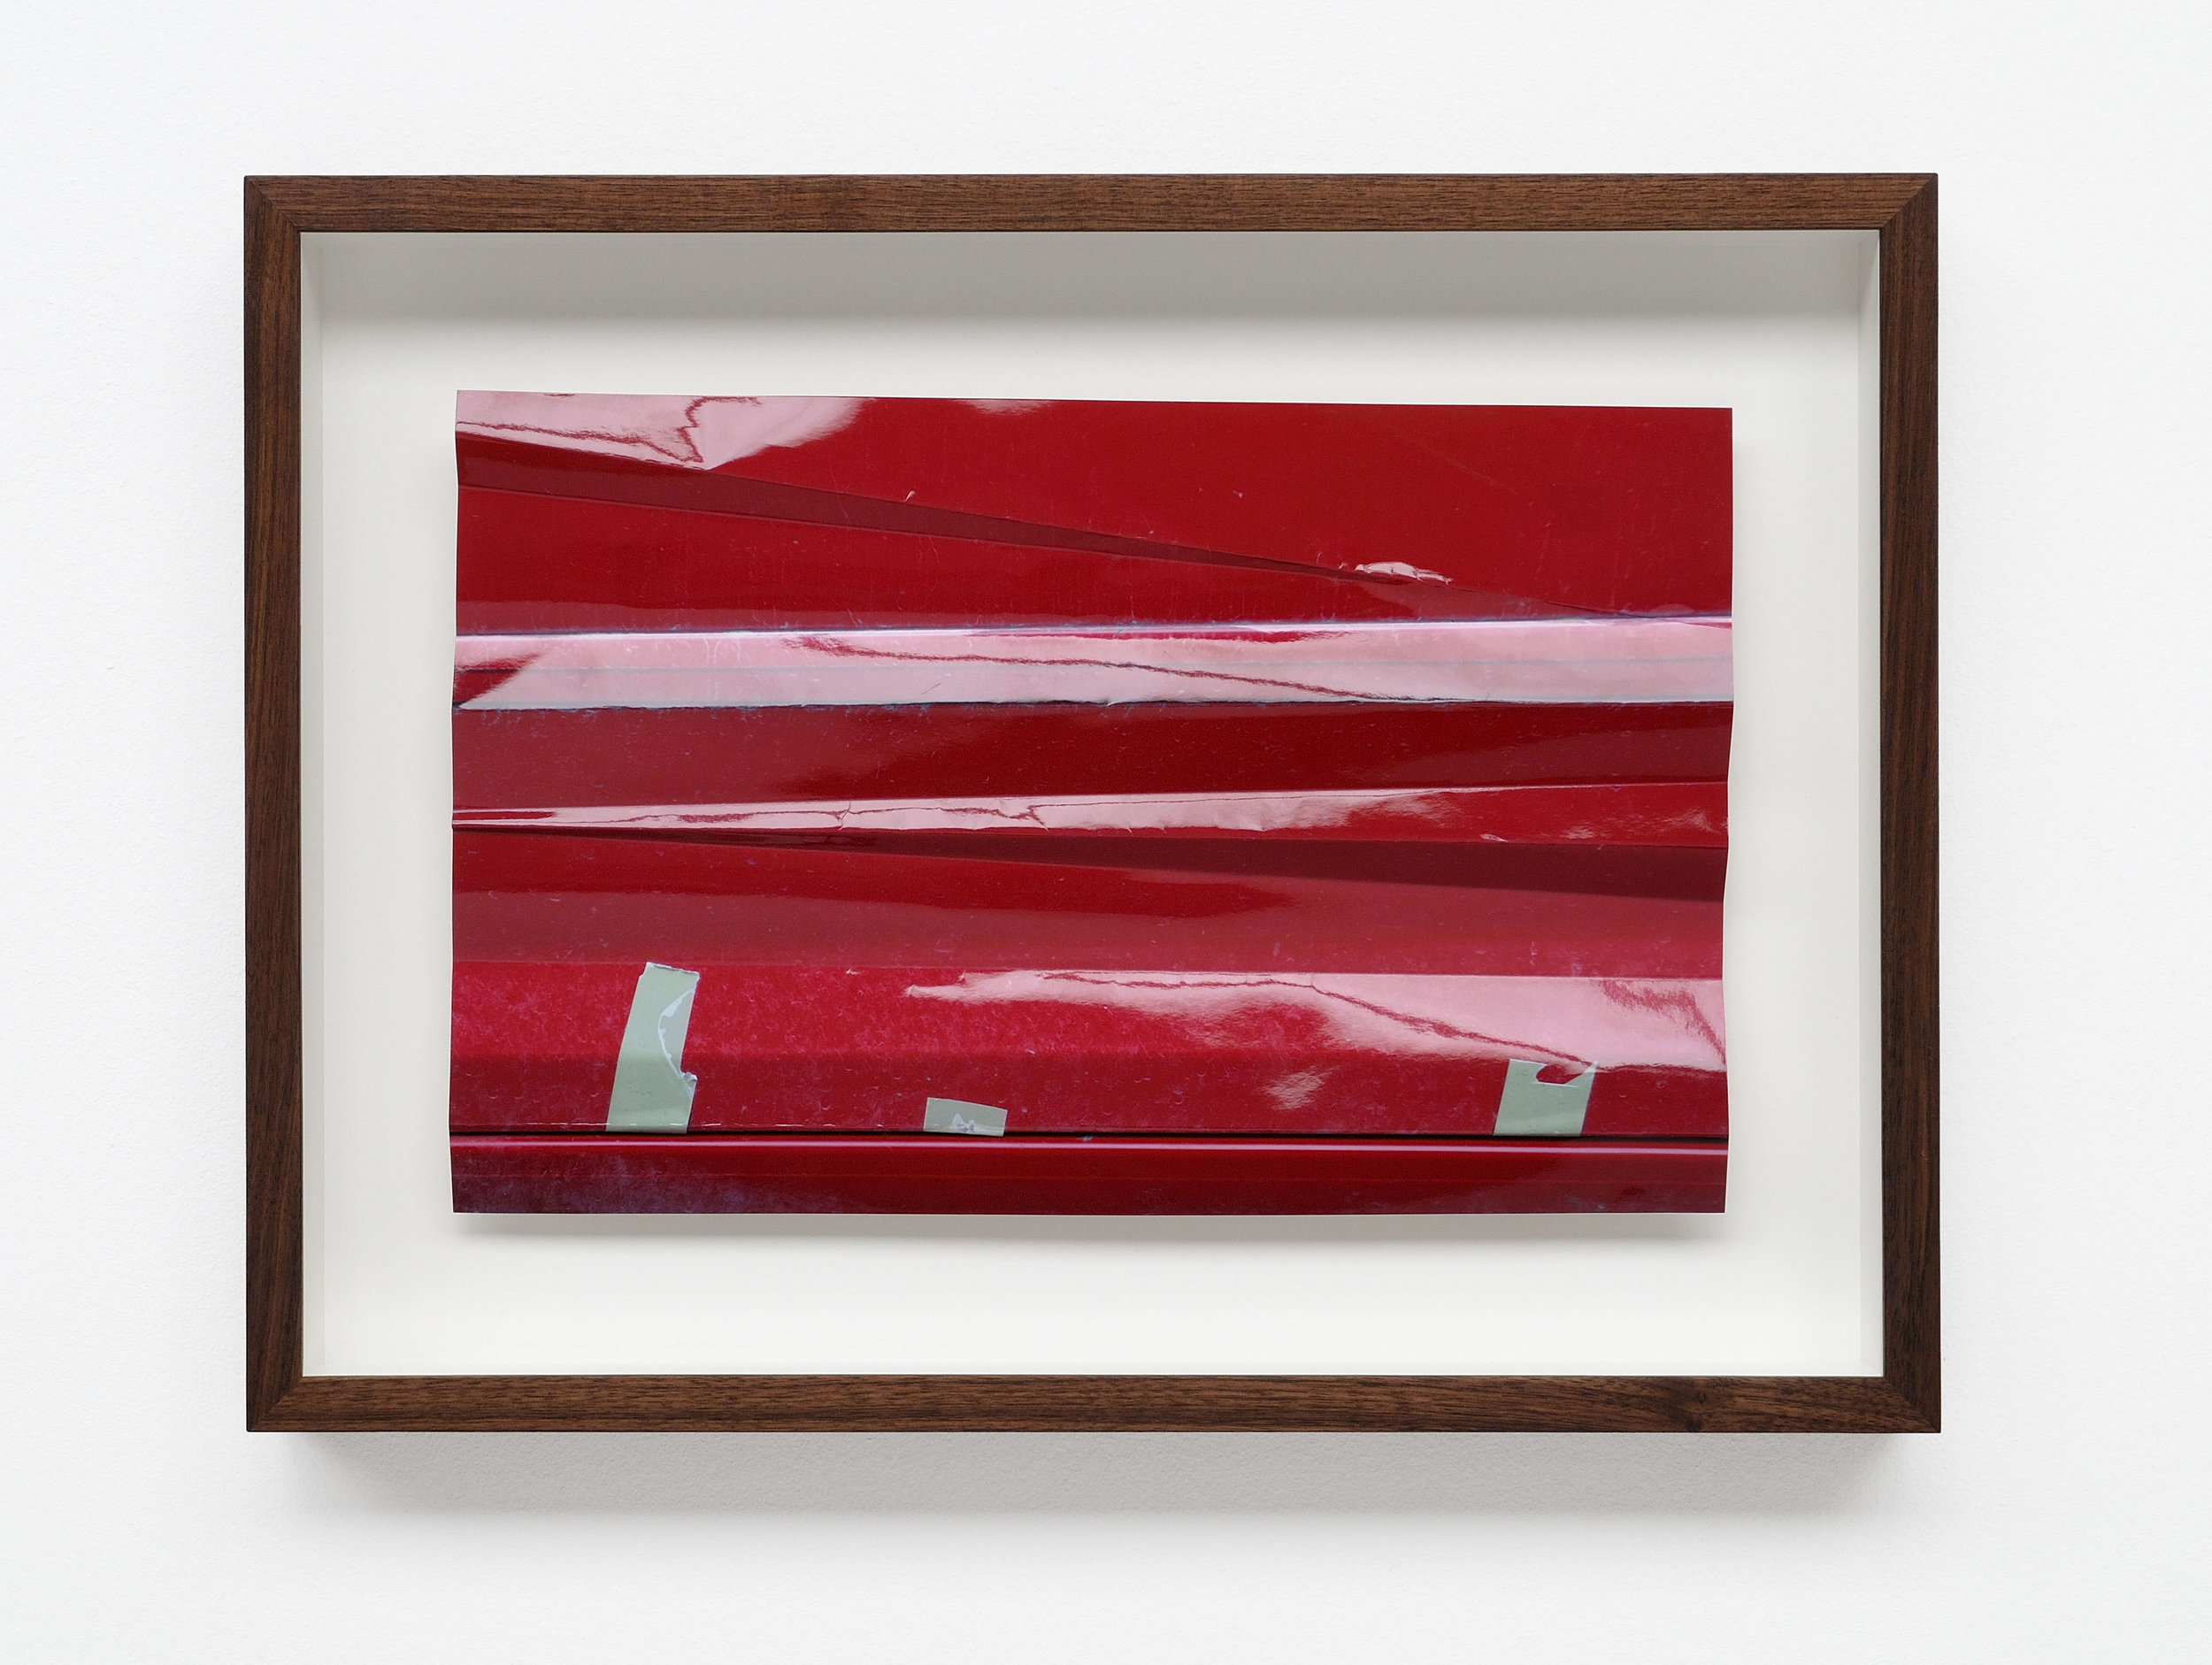  aus der Reihe: Red Crash, 2017, Farbfotografie, gefalzt, ca. 30 x 44 cm 